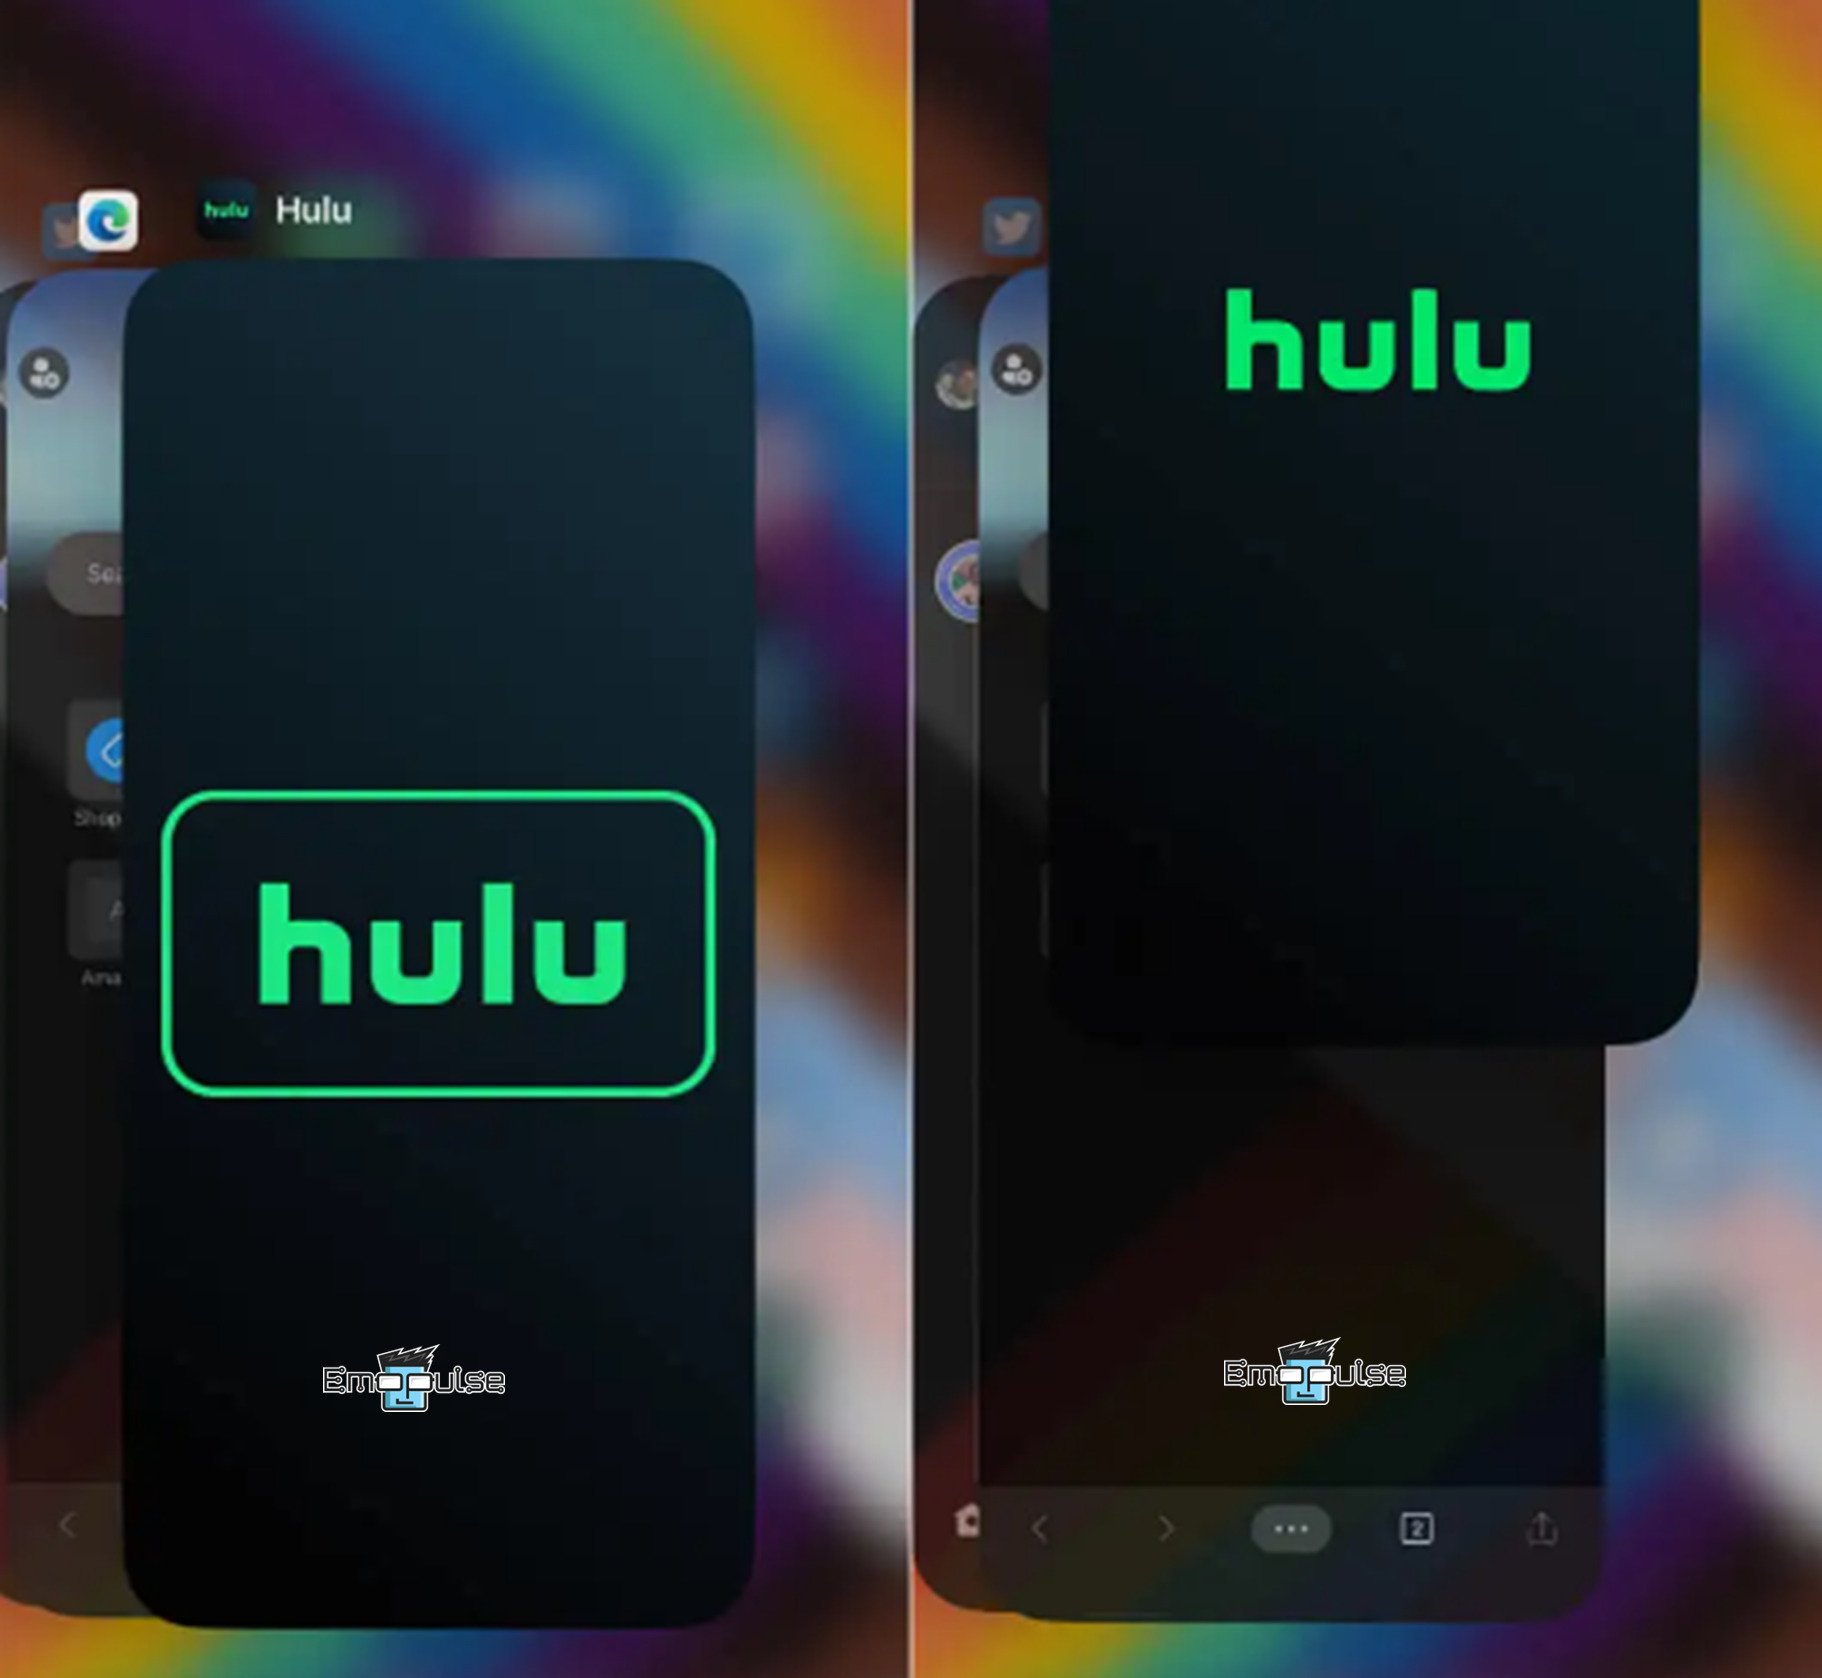 Force stop Hulu on iPhone or iPad